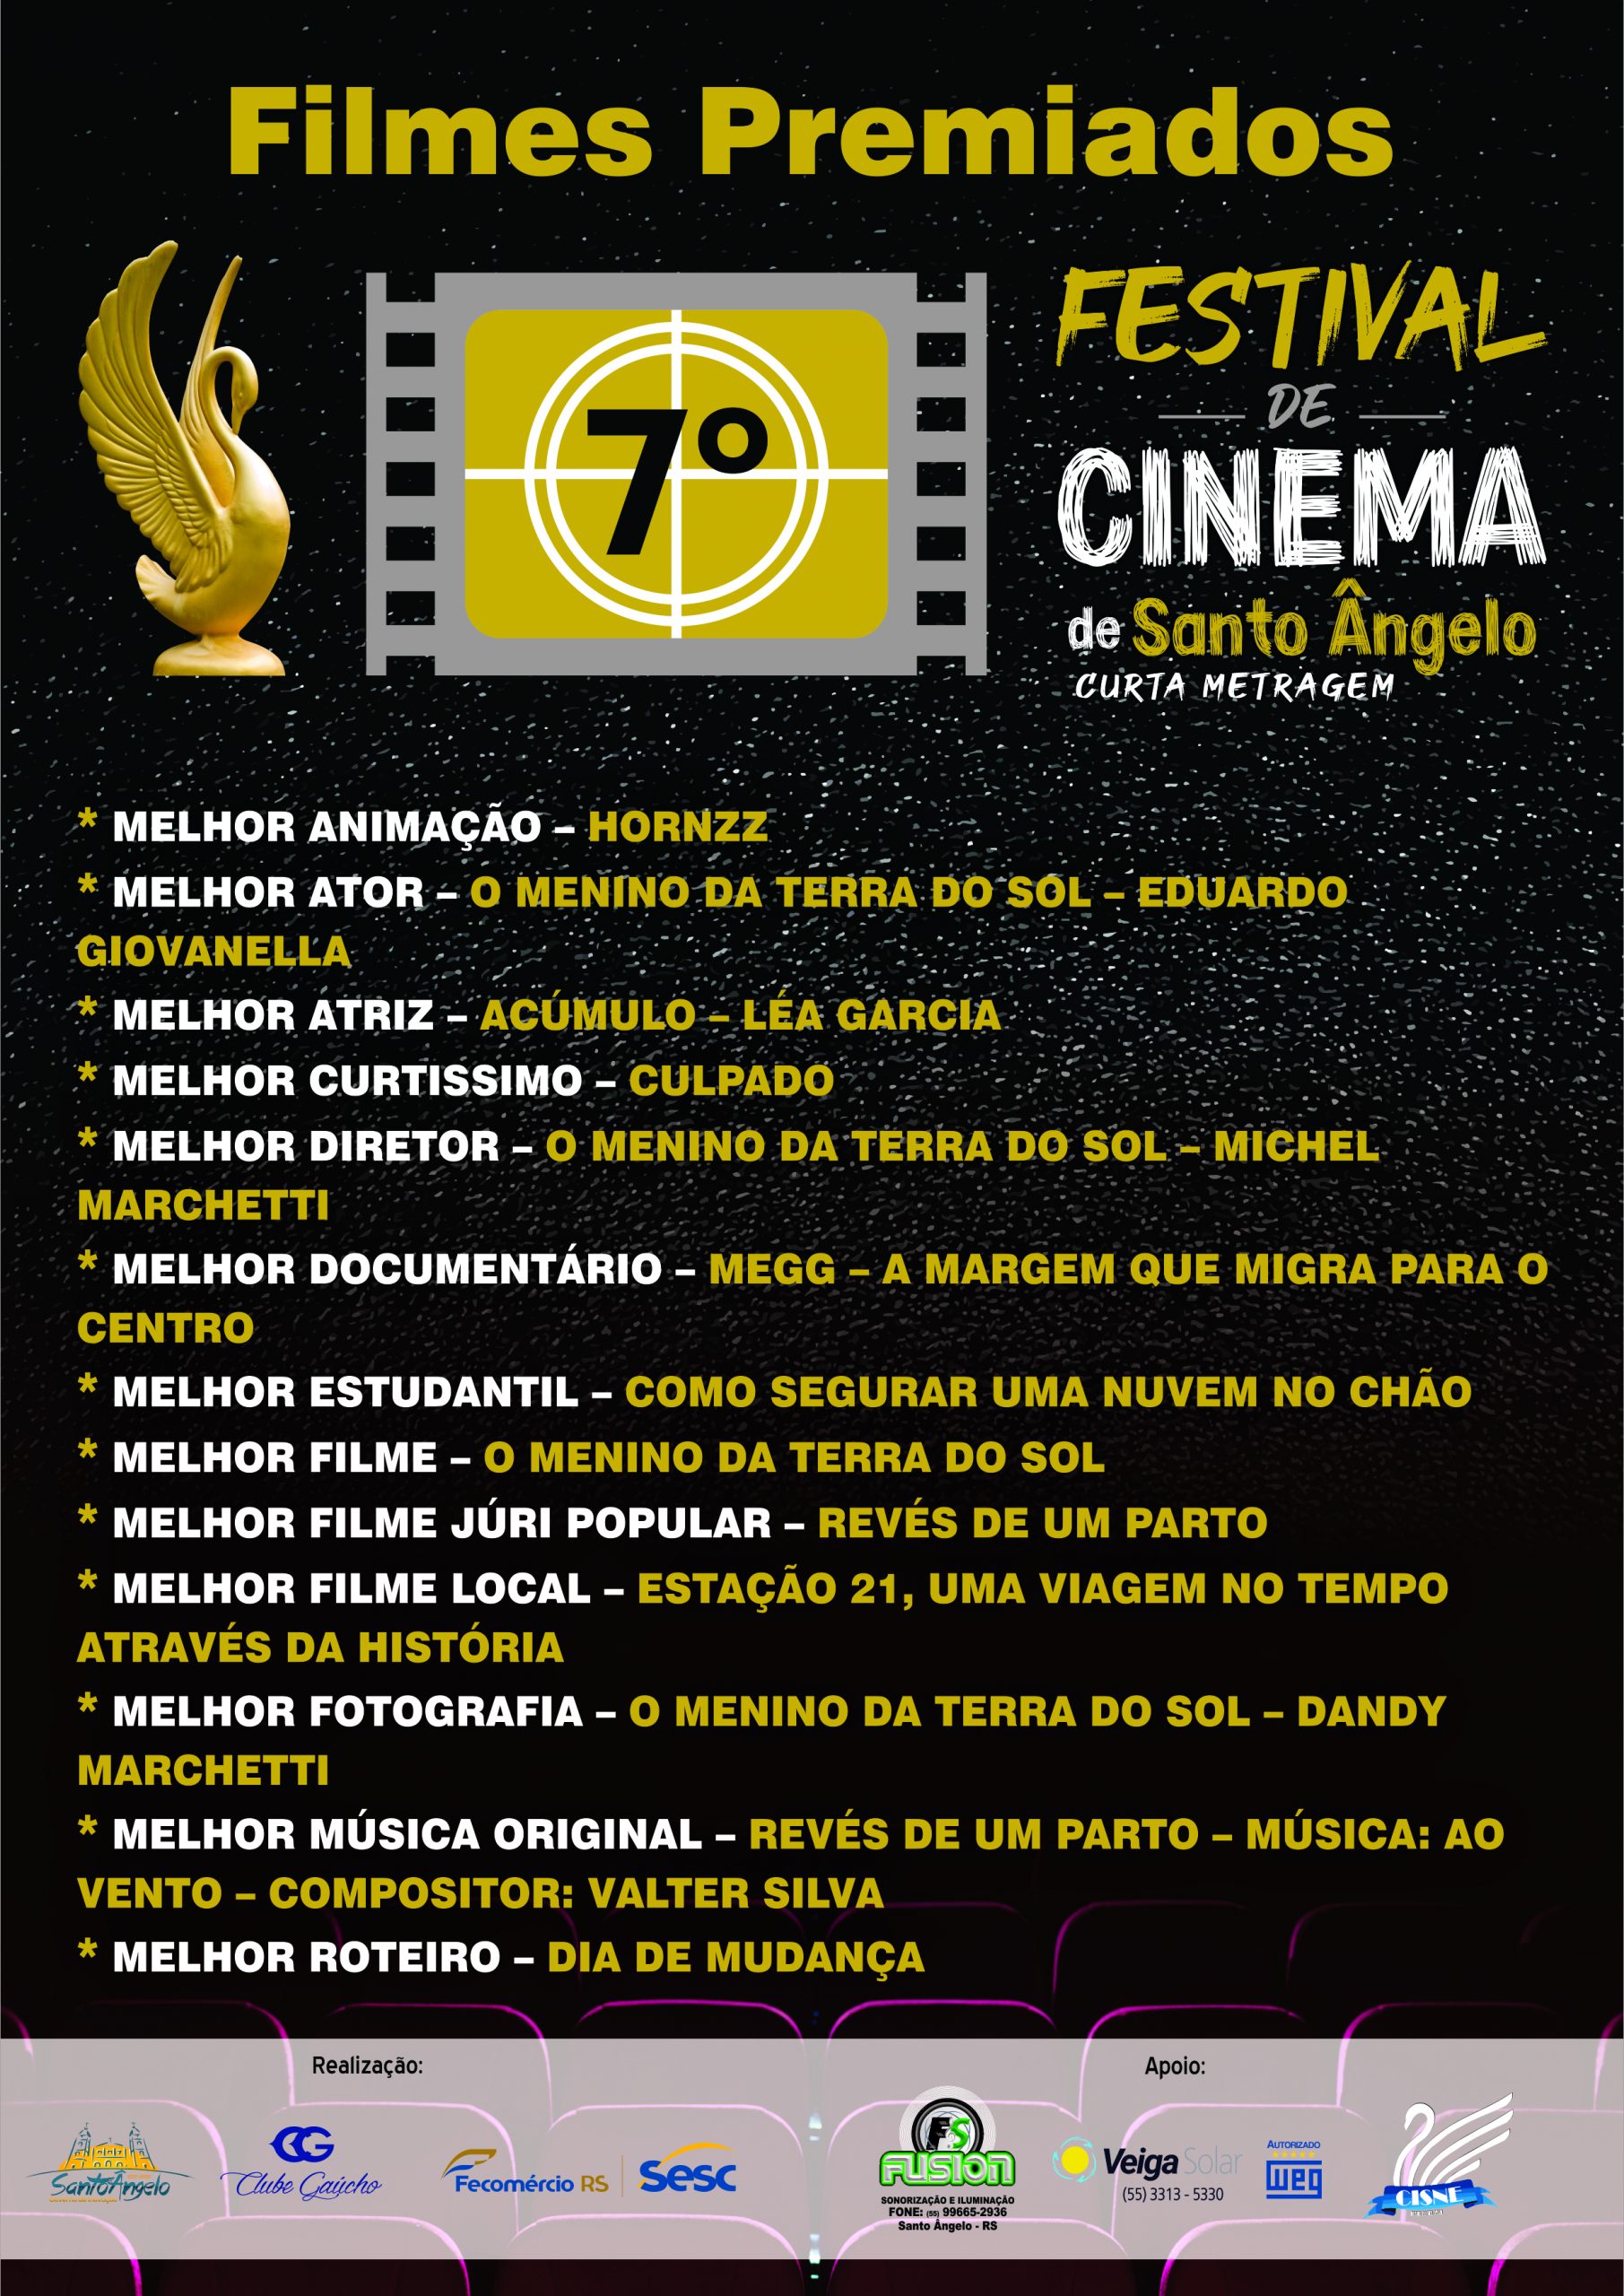 Filmes Premiados 7º Festival de Cinema de Santo Ângelo – Curta Metragem